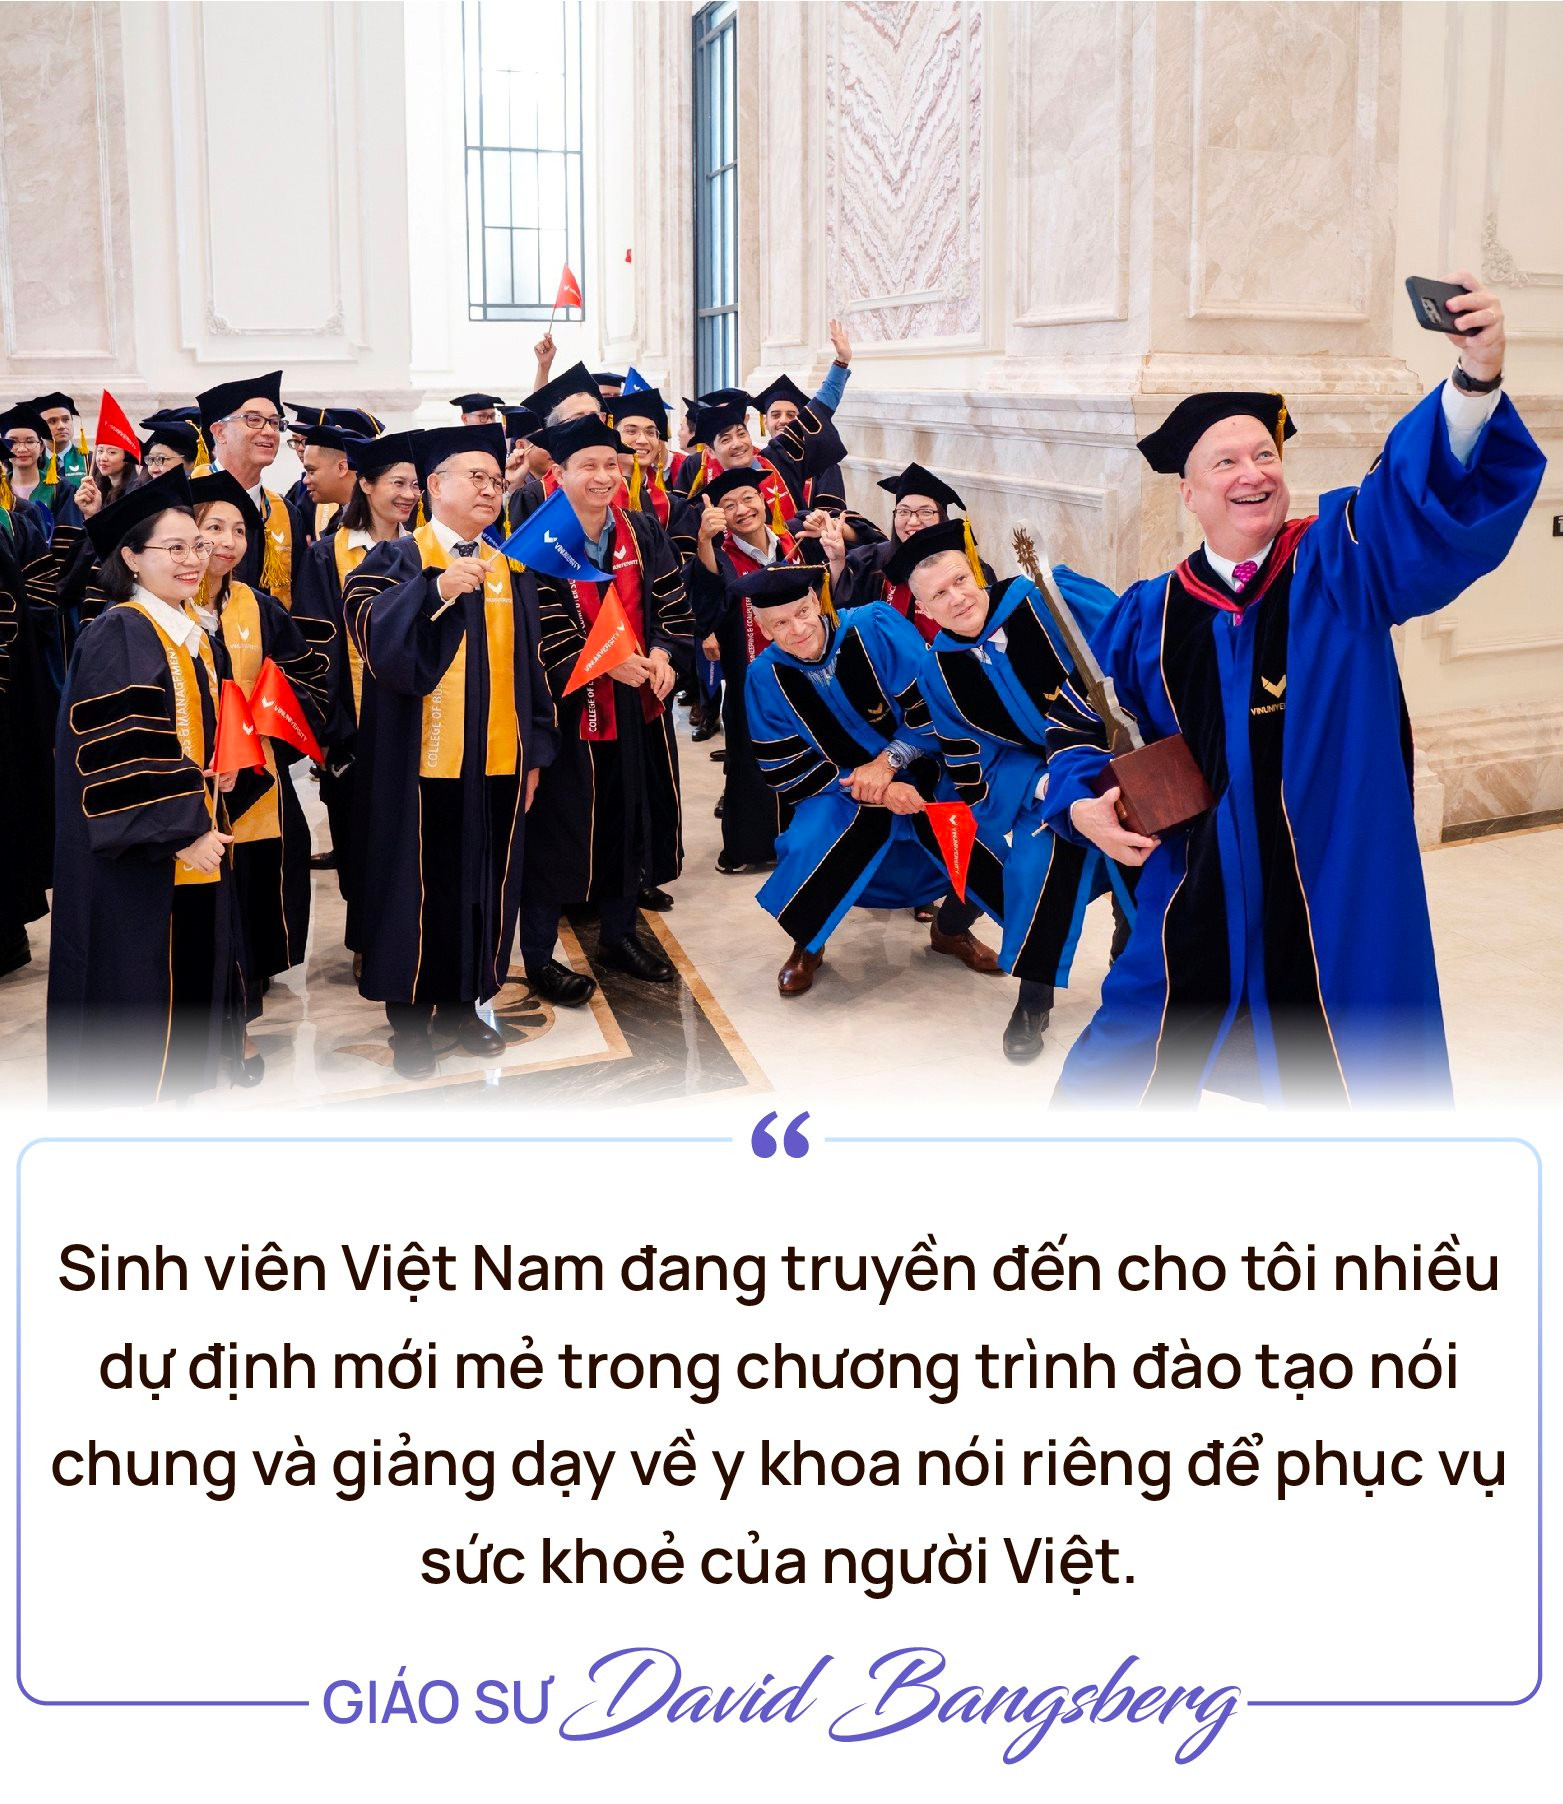 Chuyện Giáo sư Harvard “nghiện” cà phê với sinh viên Việt: Chọn sang Việt Nam phát triển giáo dục vì những lợi thế “chẳng đâu có” - Ảnh 5.